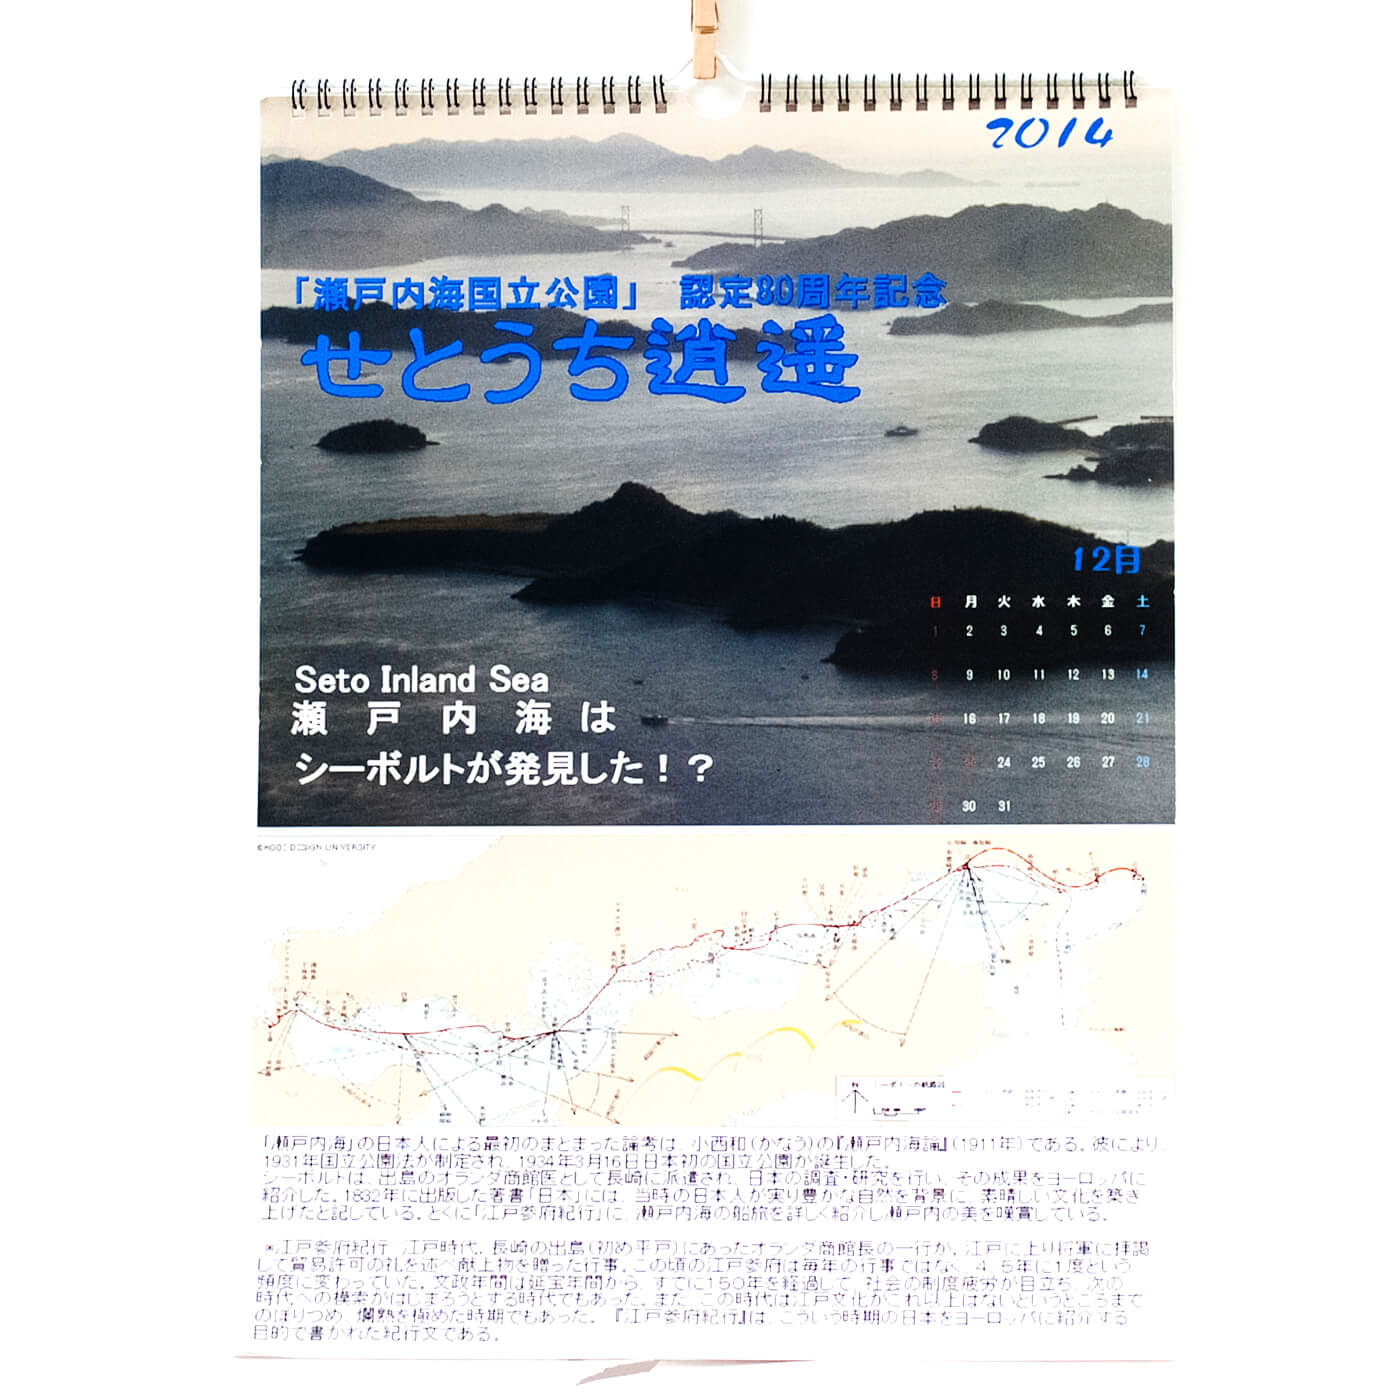 「後藤  和夫 様」製作のオリジナルカレンダー